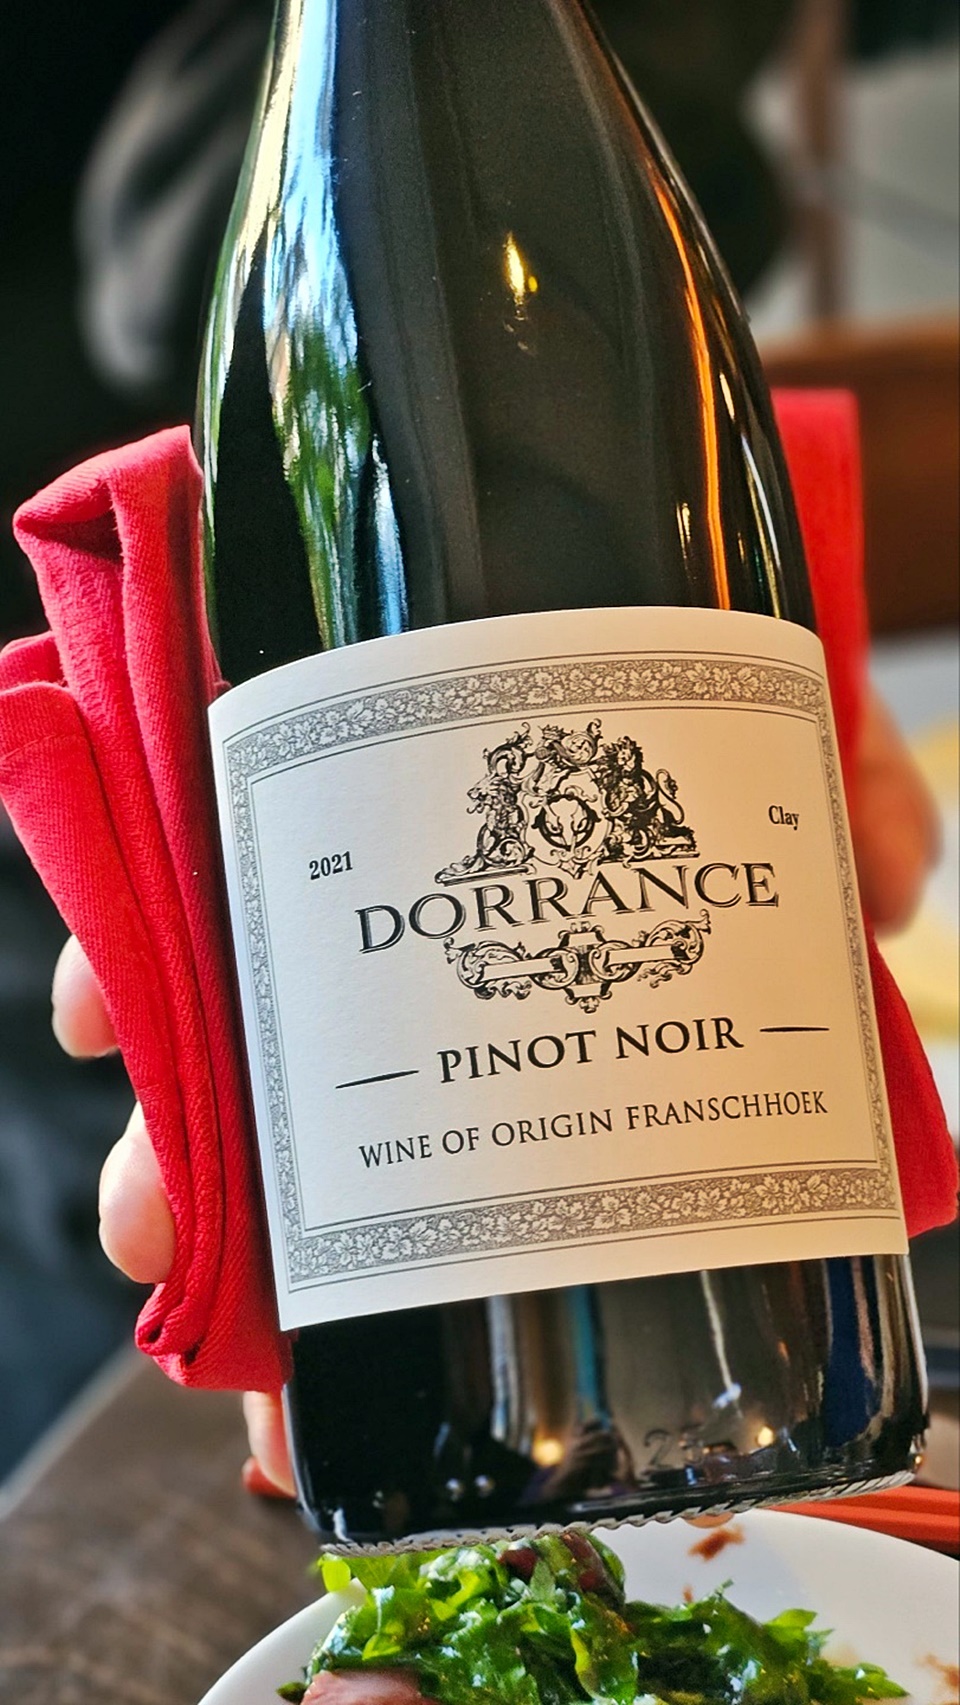 도랑스 피노 누아(Dorrance Pinot Noir) 2021, 남아공의 프란슈호크(FRANSCHHOEK) 지역에서 생산된다